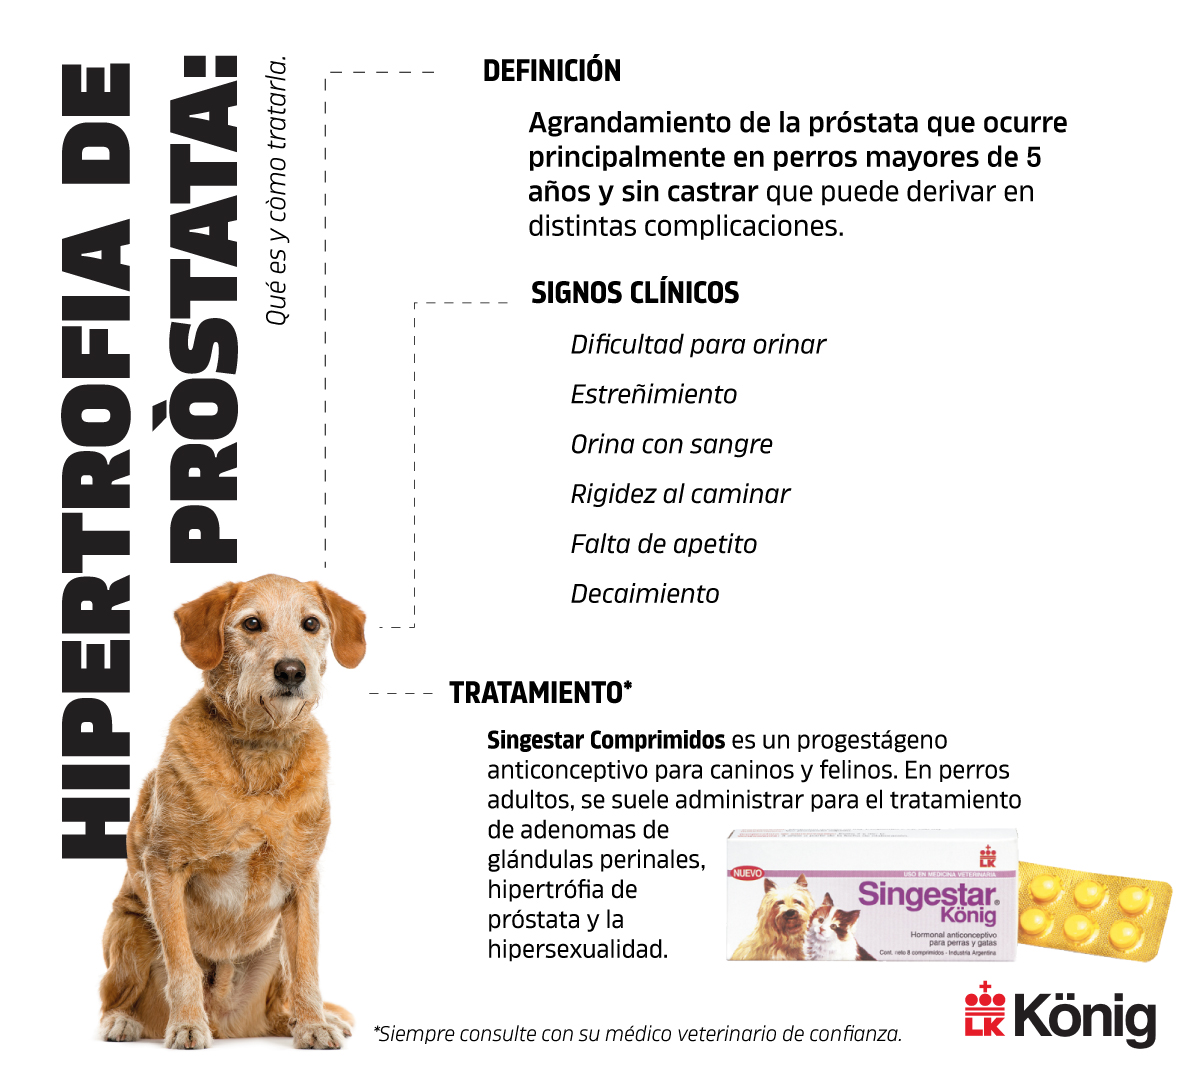 Qué es la hipertrofia de próstata? - Konig - Productos veterinarios para pequeños animales animales productivos